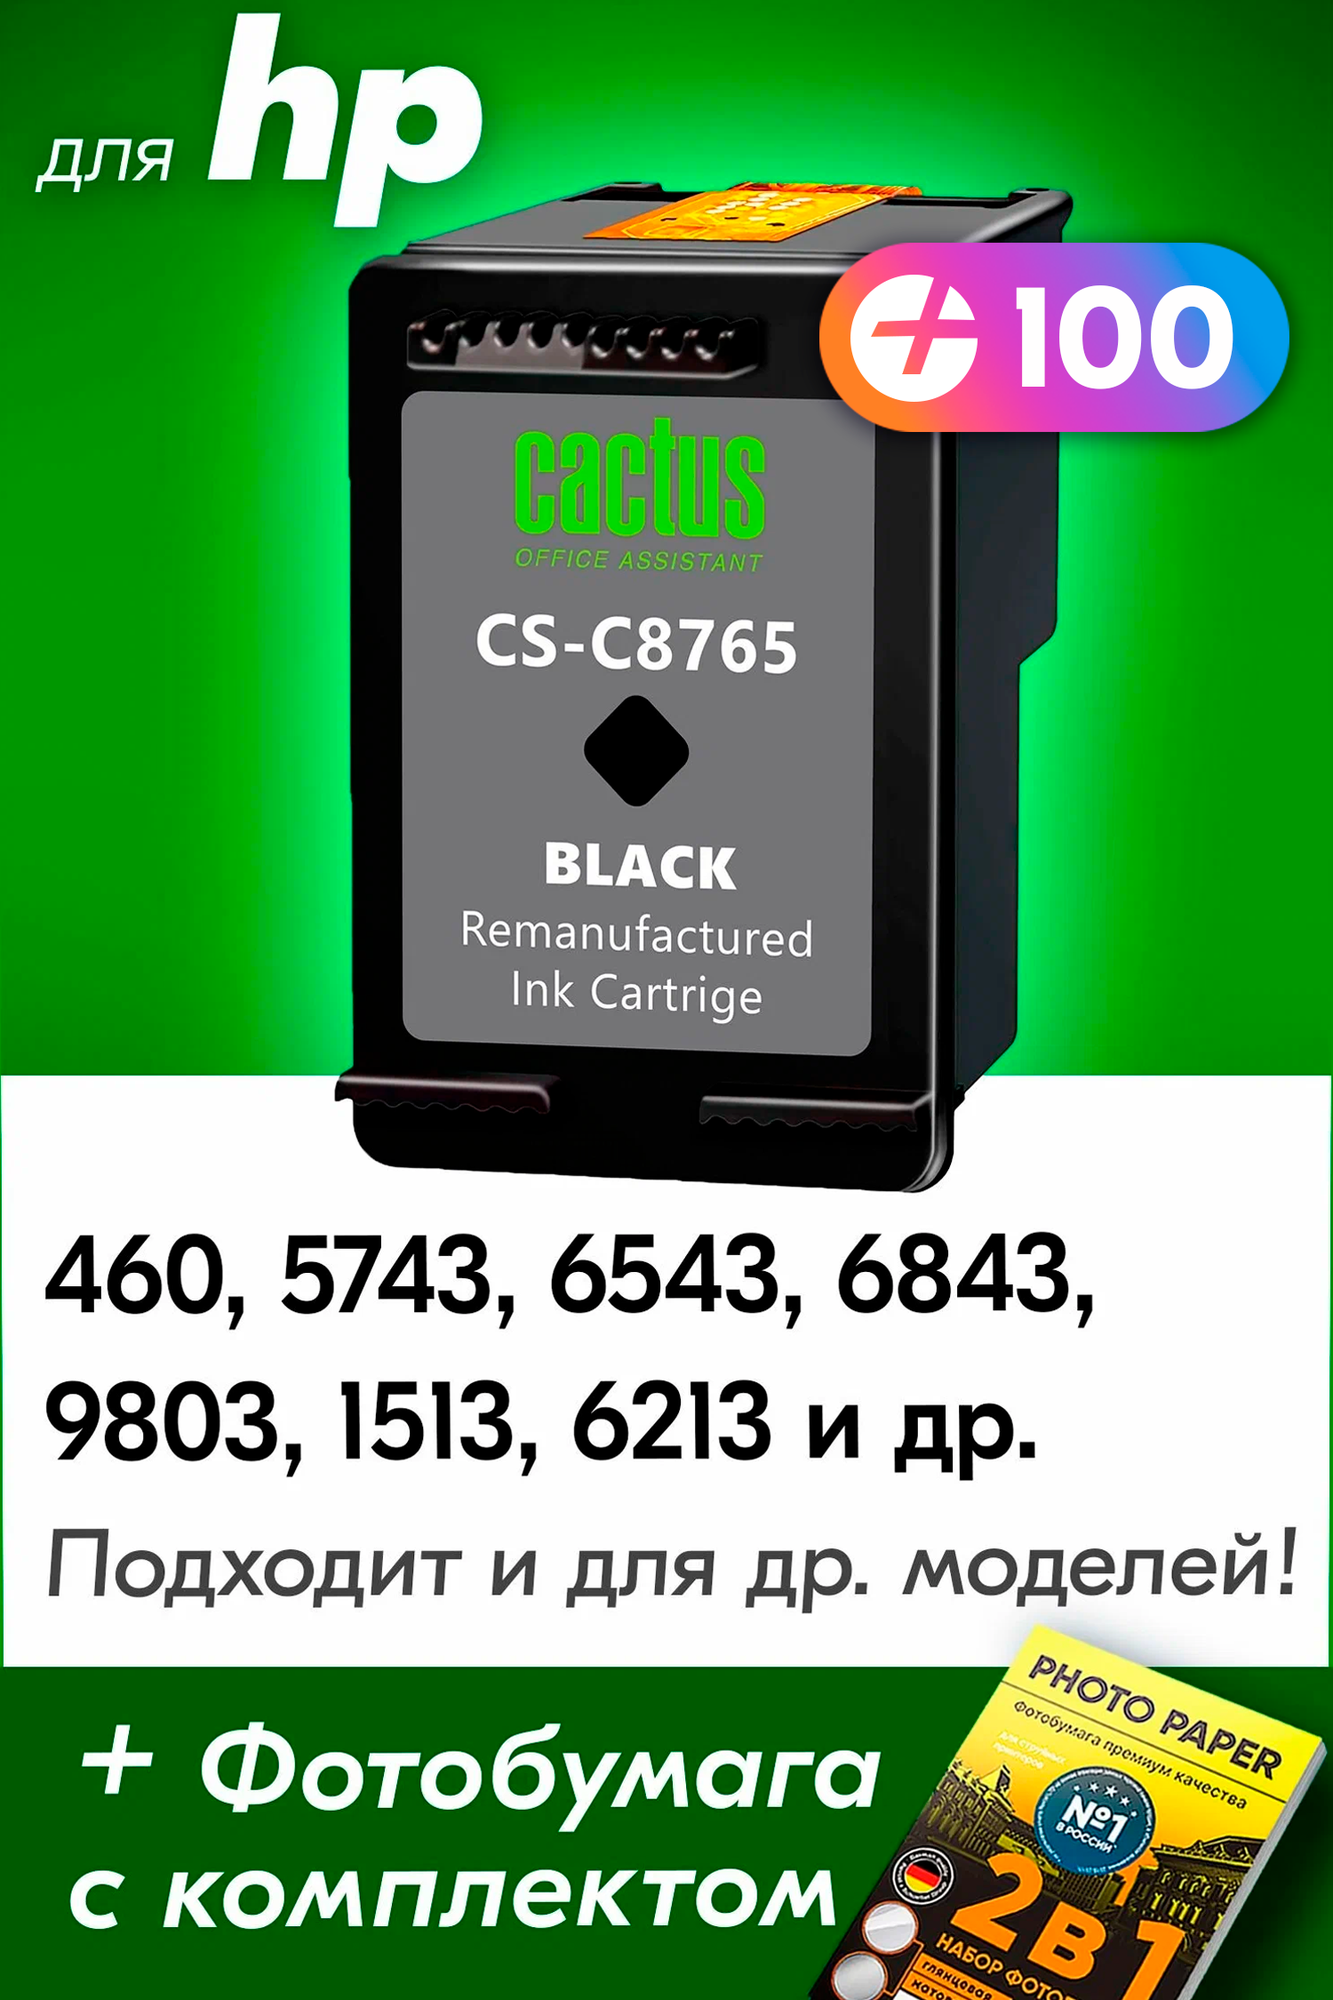 Картридж для HP №131, C8765HE, HP Deskjet 460, 5743, 6543, 6843, 9803, PSC1513, 6213, K7103 и др. с краской (тонером) черный новый заправляемый